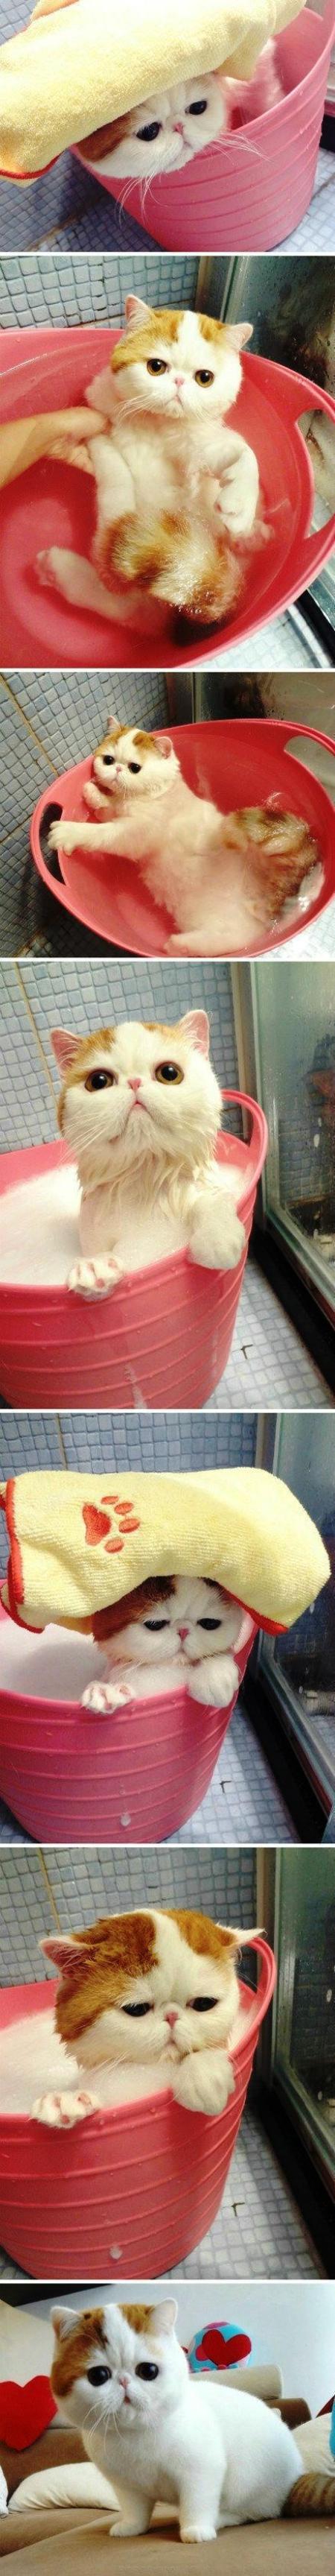 Cutest Cat Bath Ever